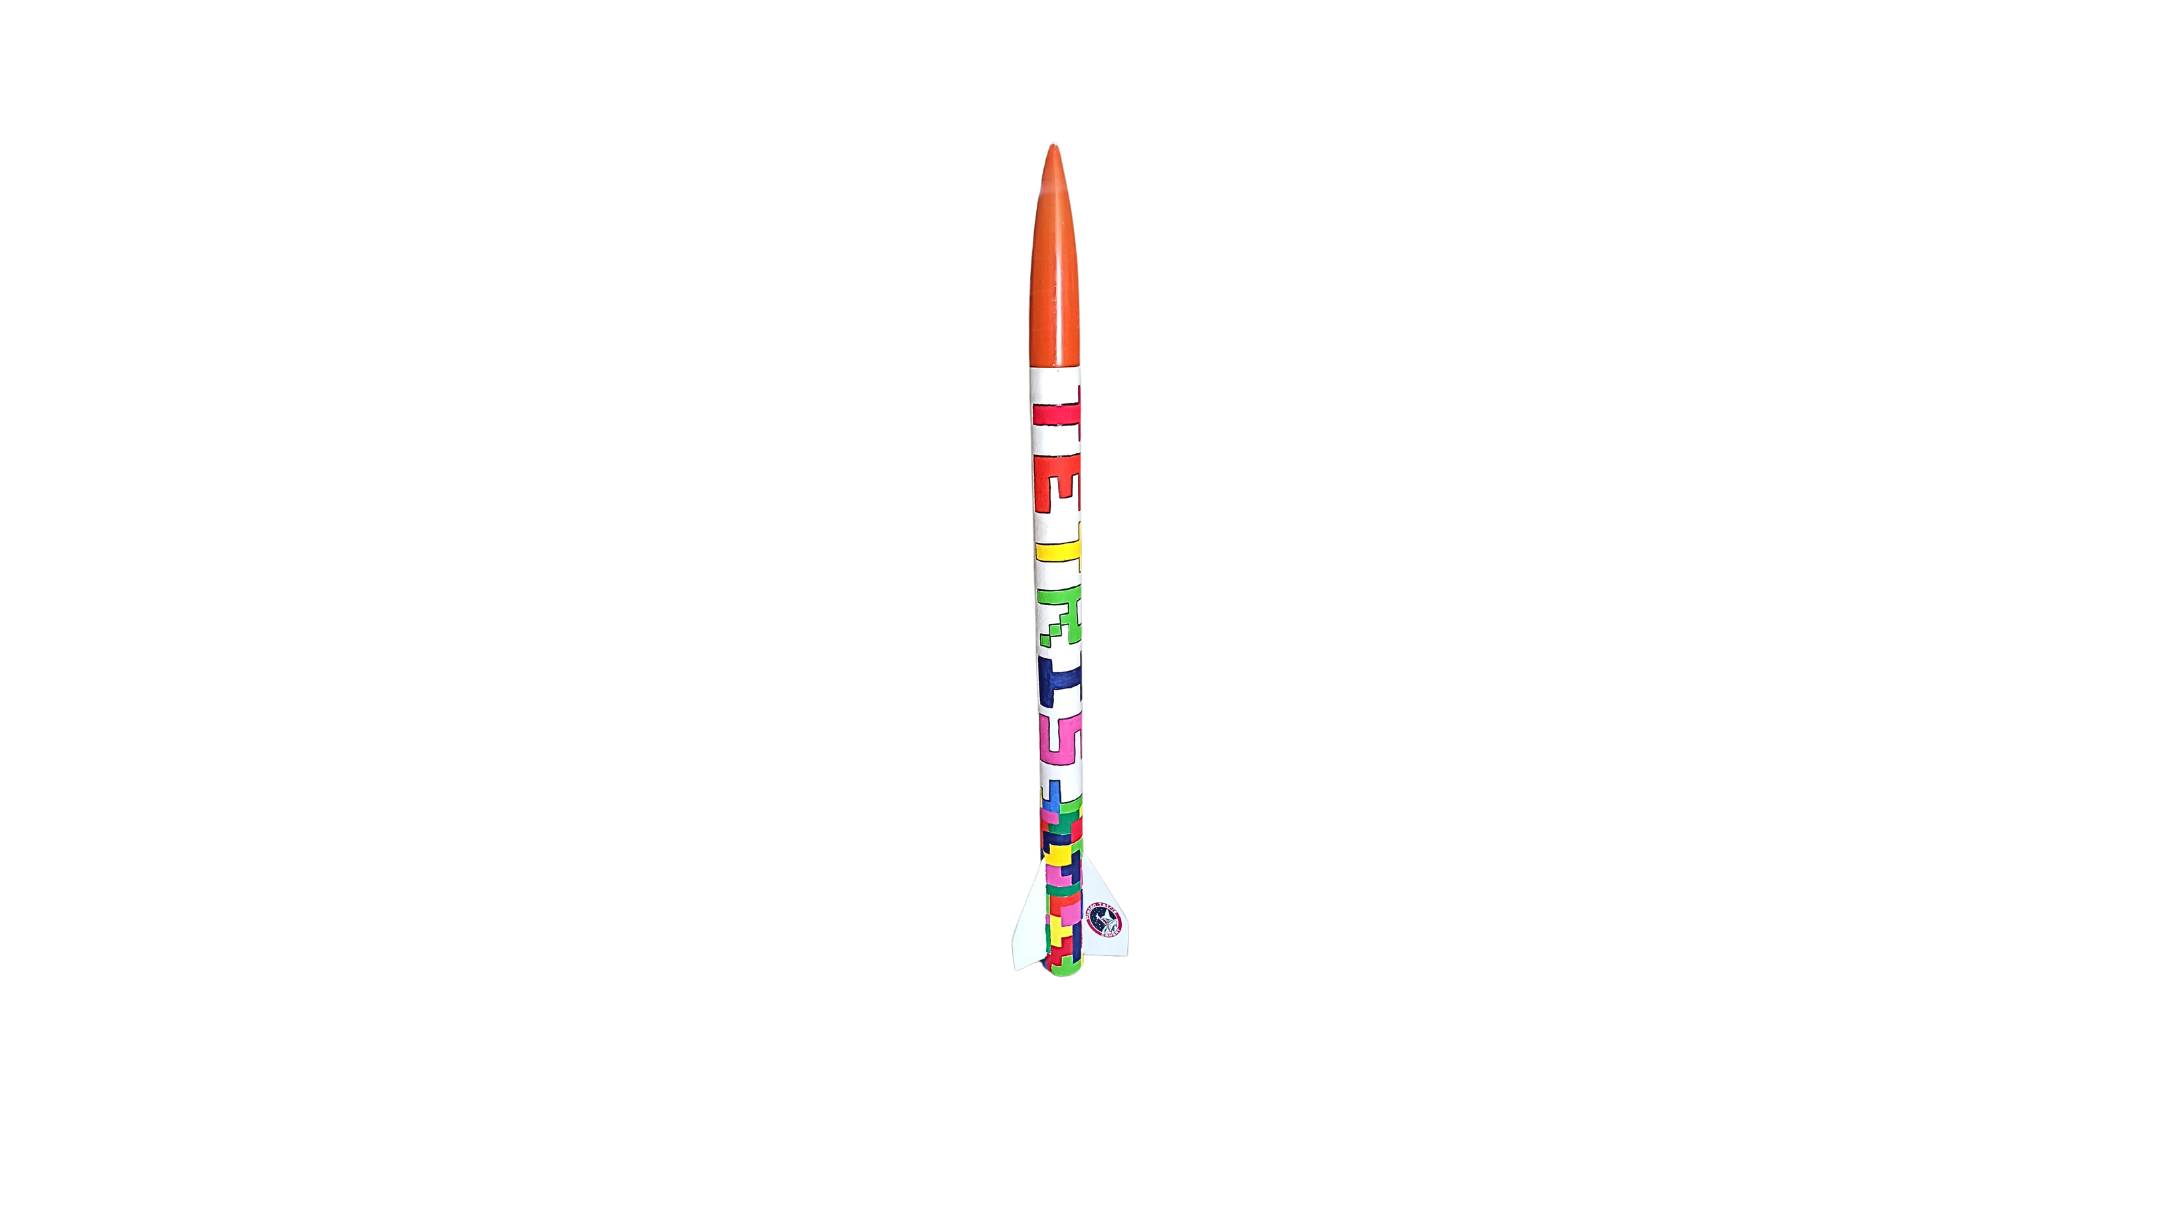 Tetris experimental rocket